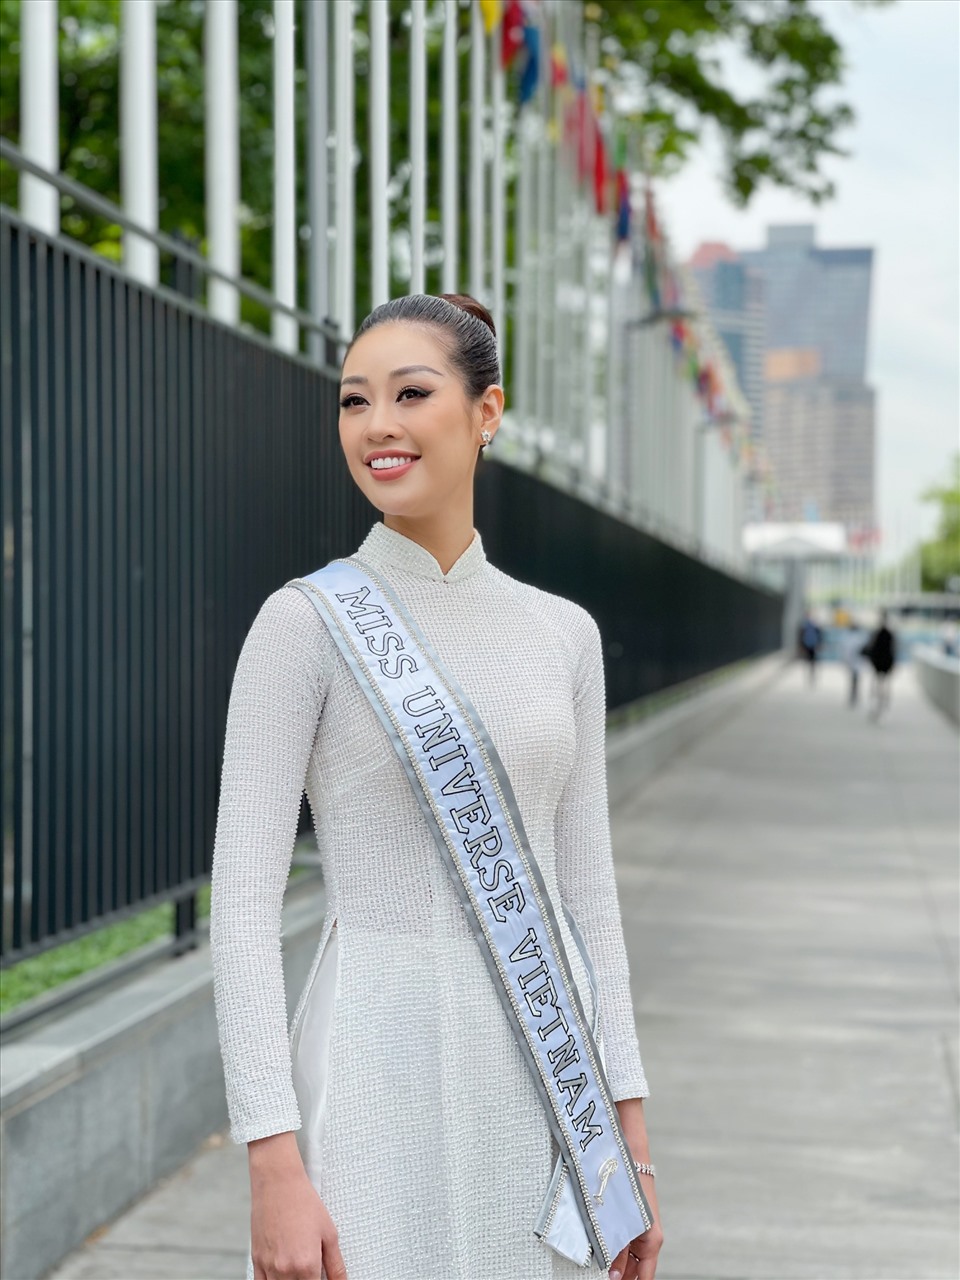 Bên cạnh việc chụp ảnh hợp tác cùng nhiếp ảnh gia Fadil Berisha, Hoa hậu Khánh Vân còn đến thăm phái đoàn Việt Nam tại Liên Hợp Quốc và Lãnh sự quán Việt Nam tại New York.